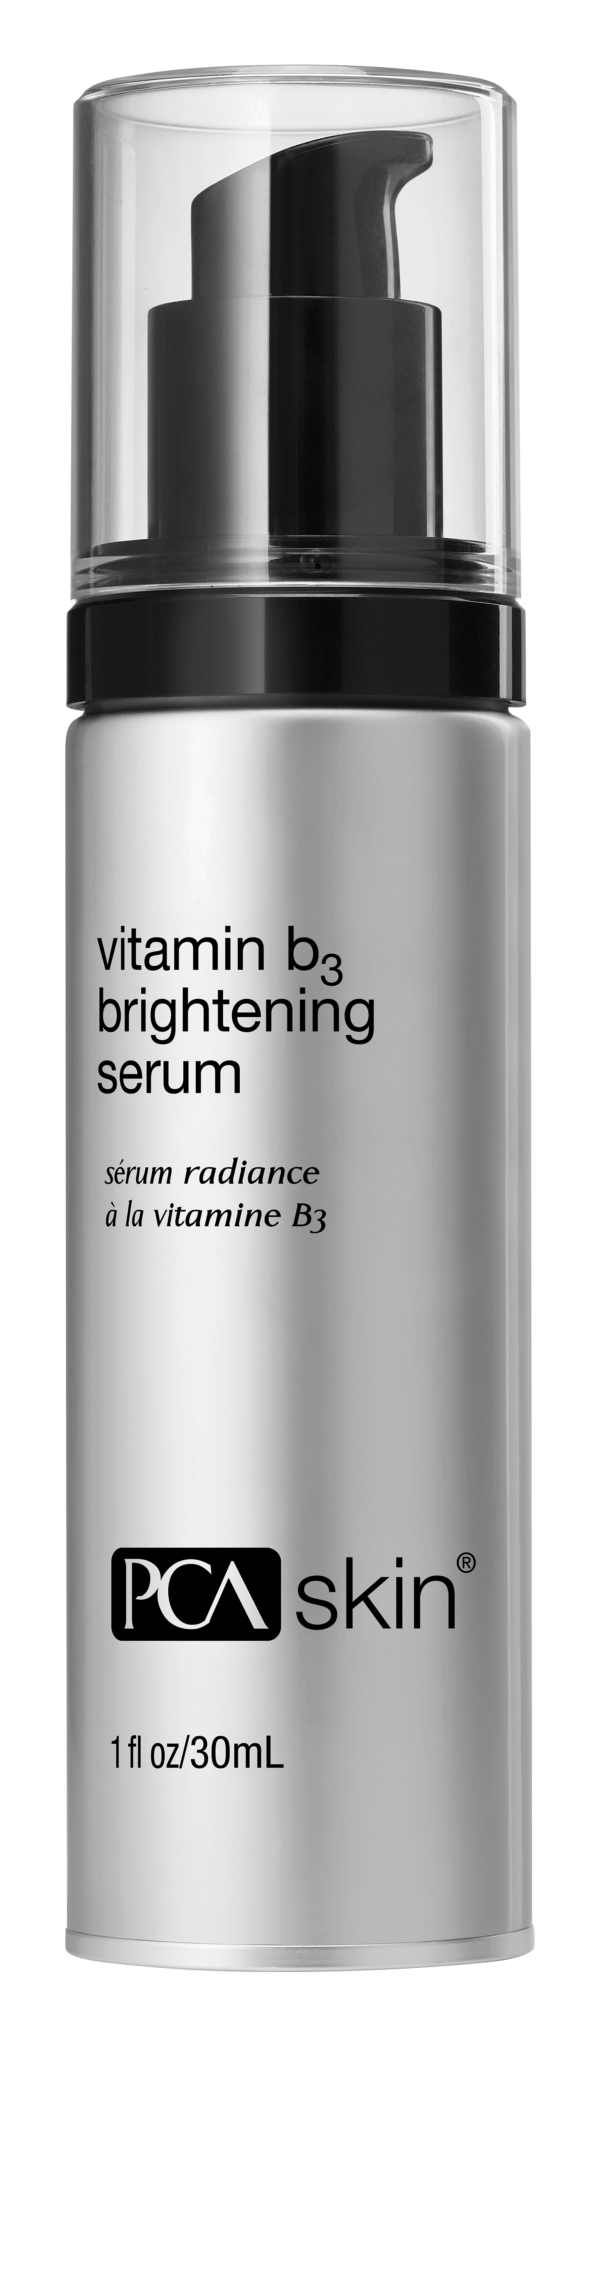 PCA_Skin_Vitamin_B3_Brightening_Serum